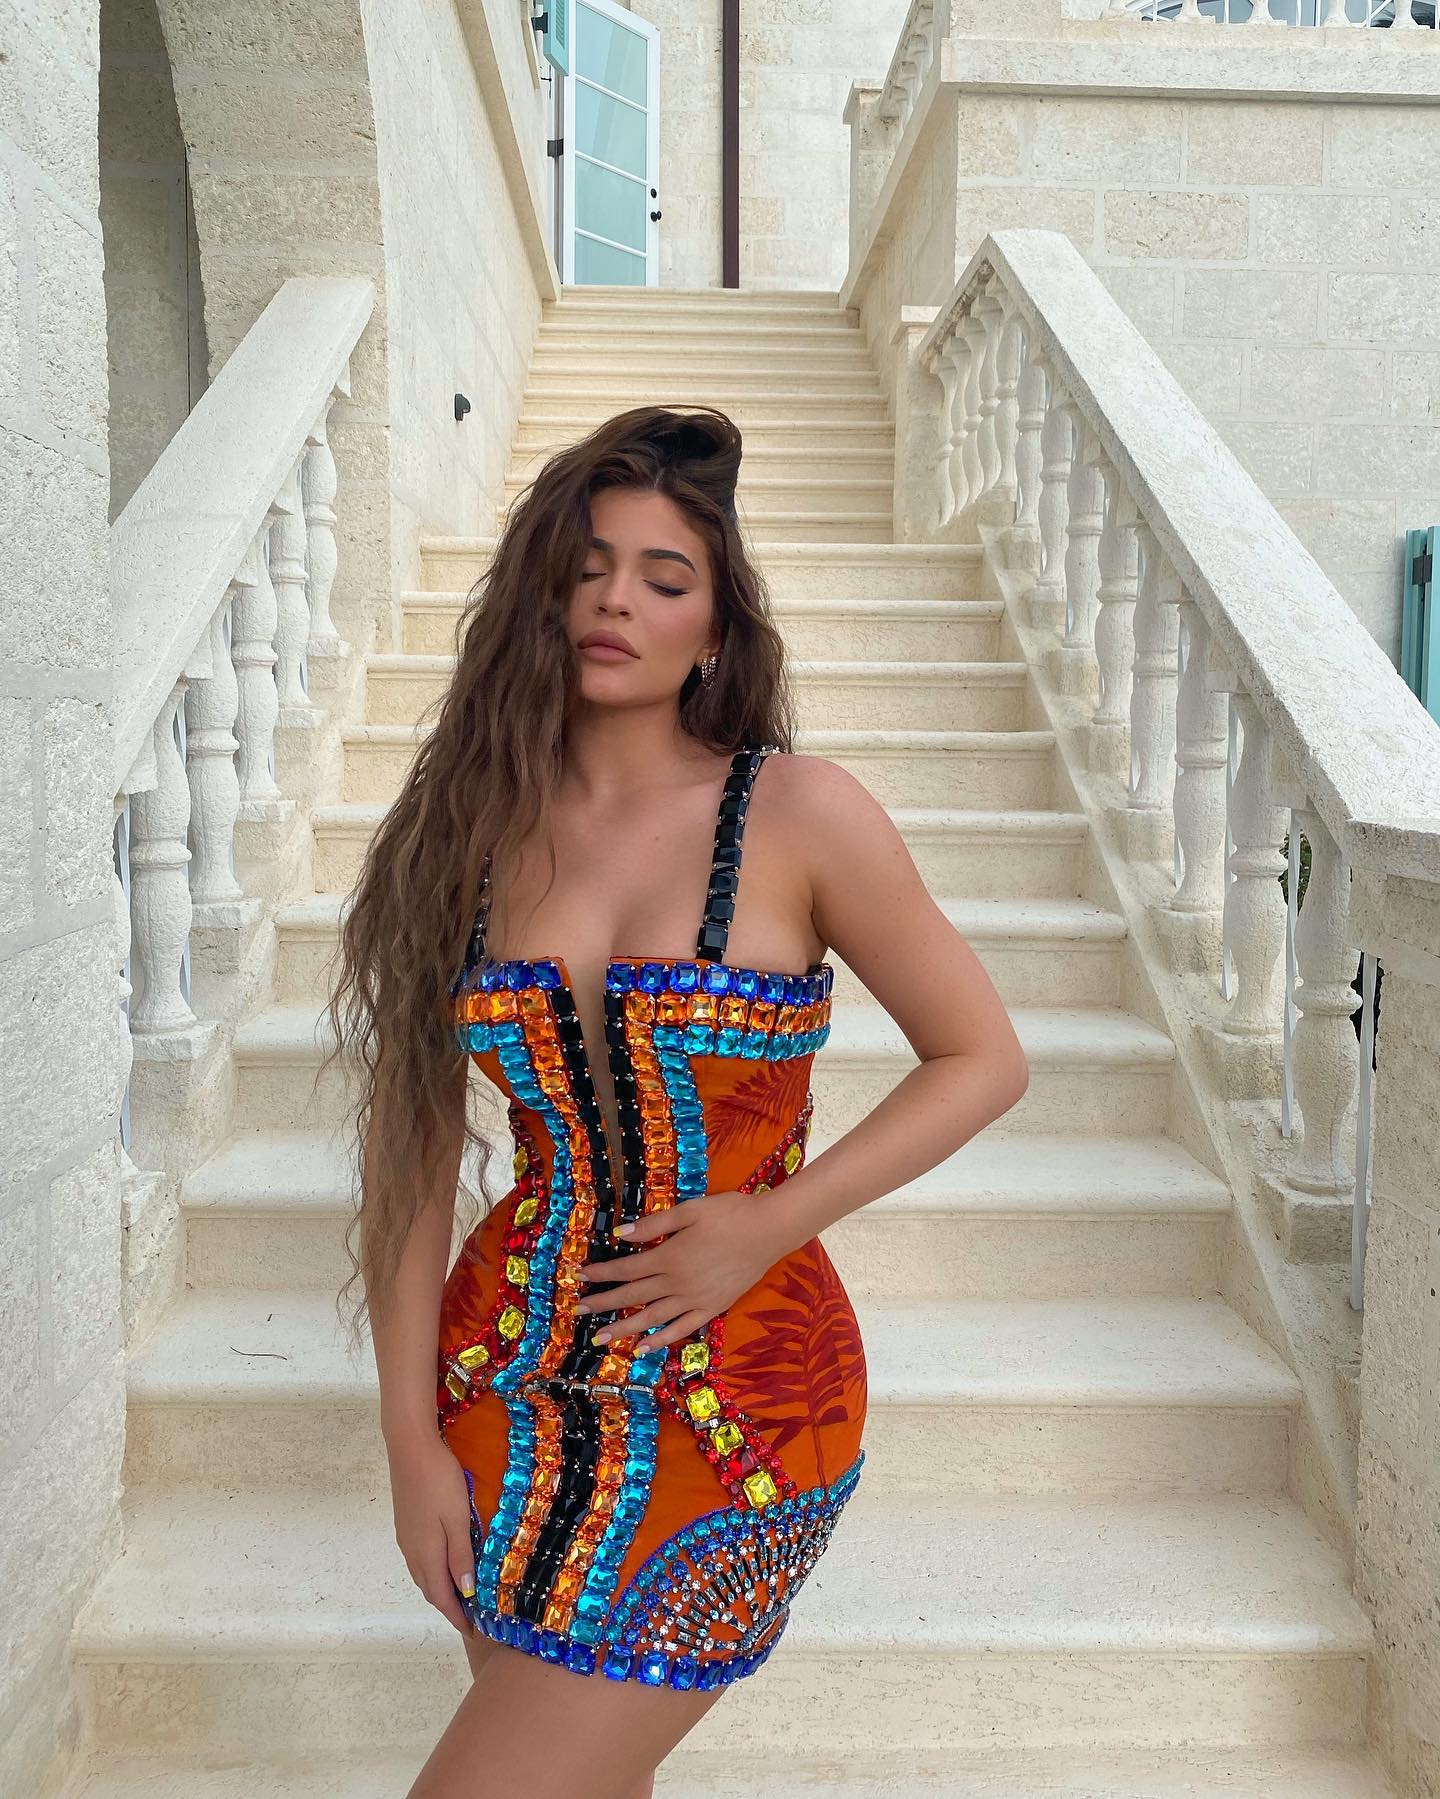 Fotos n°8 : Kylie Jenner en el Caribe!